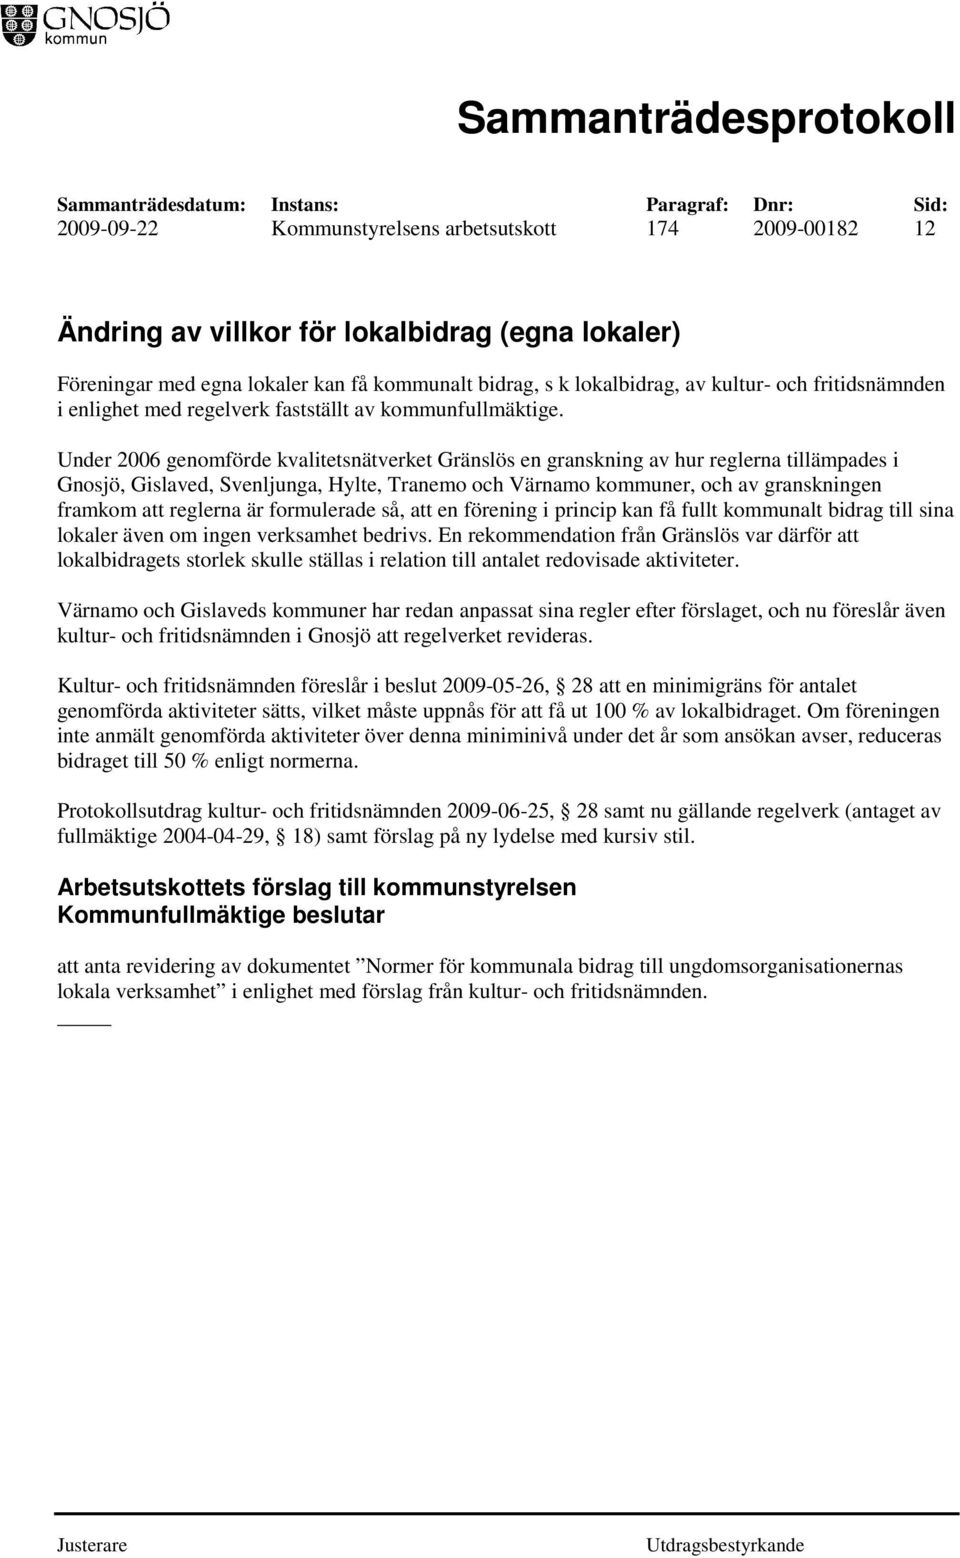 Under 2006 genomförde kvalitetsnätverket Gränslös en granskning av hur reglerna tillämpades i Gnosjö, Gislaved, Svenljunga, Hylte, Tranemo och Värnamo kommuner, och av granskningen framkom att